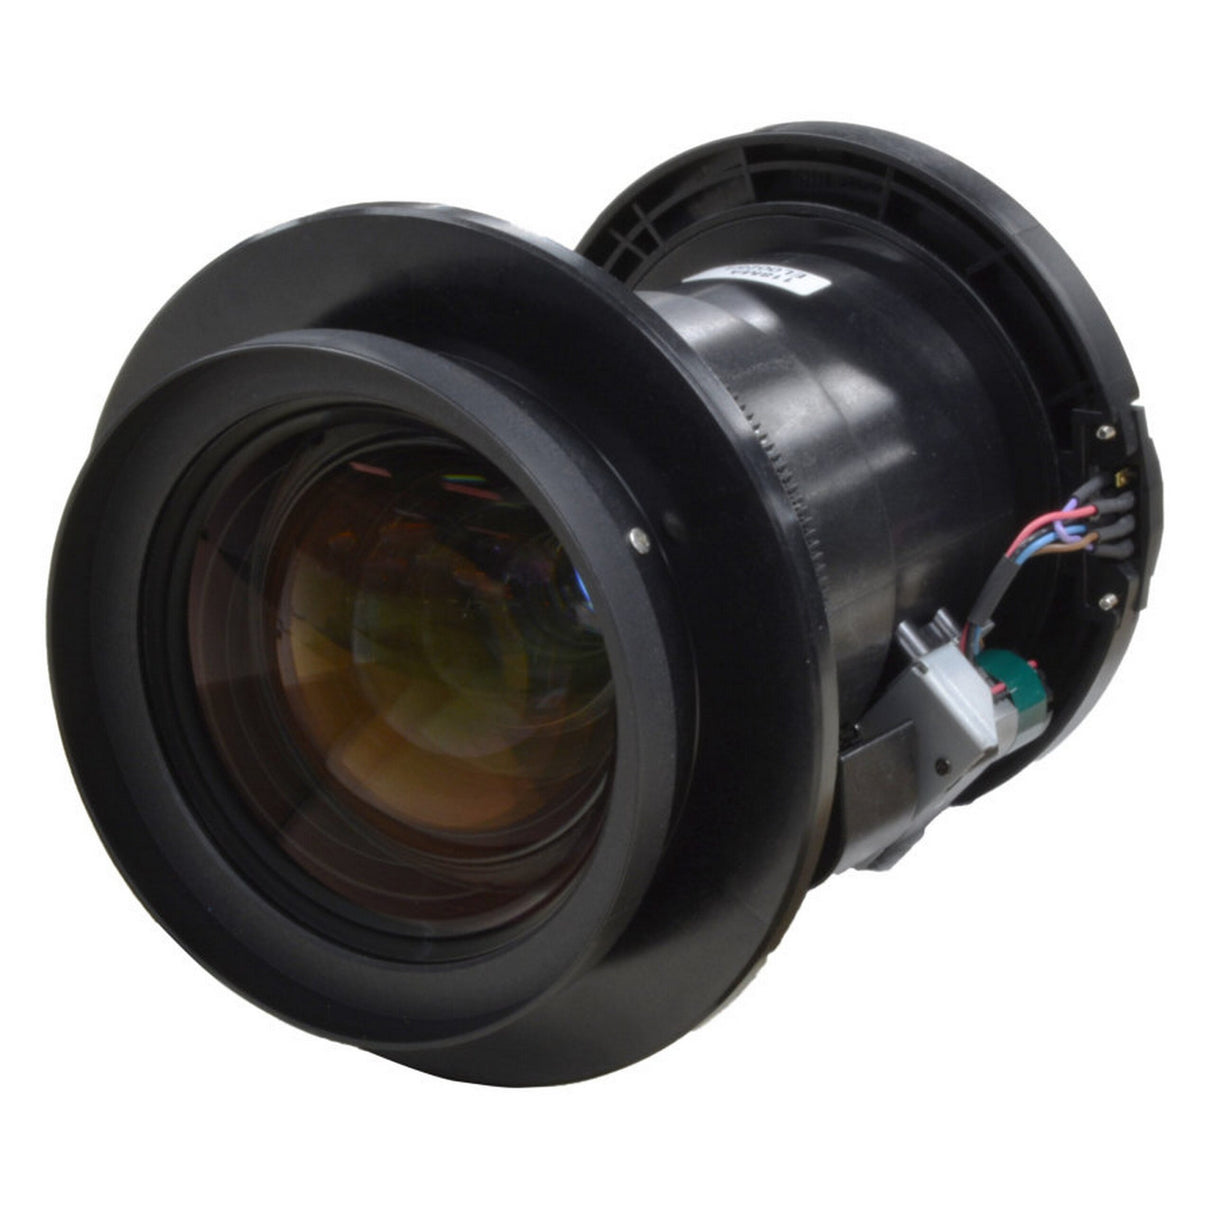 Eiki AH-E21010 Projector Lens for EK-510U/L, EK-500U/L, EK-511W/L